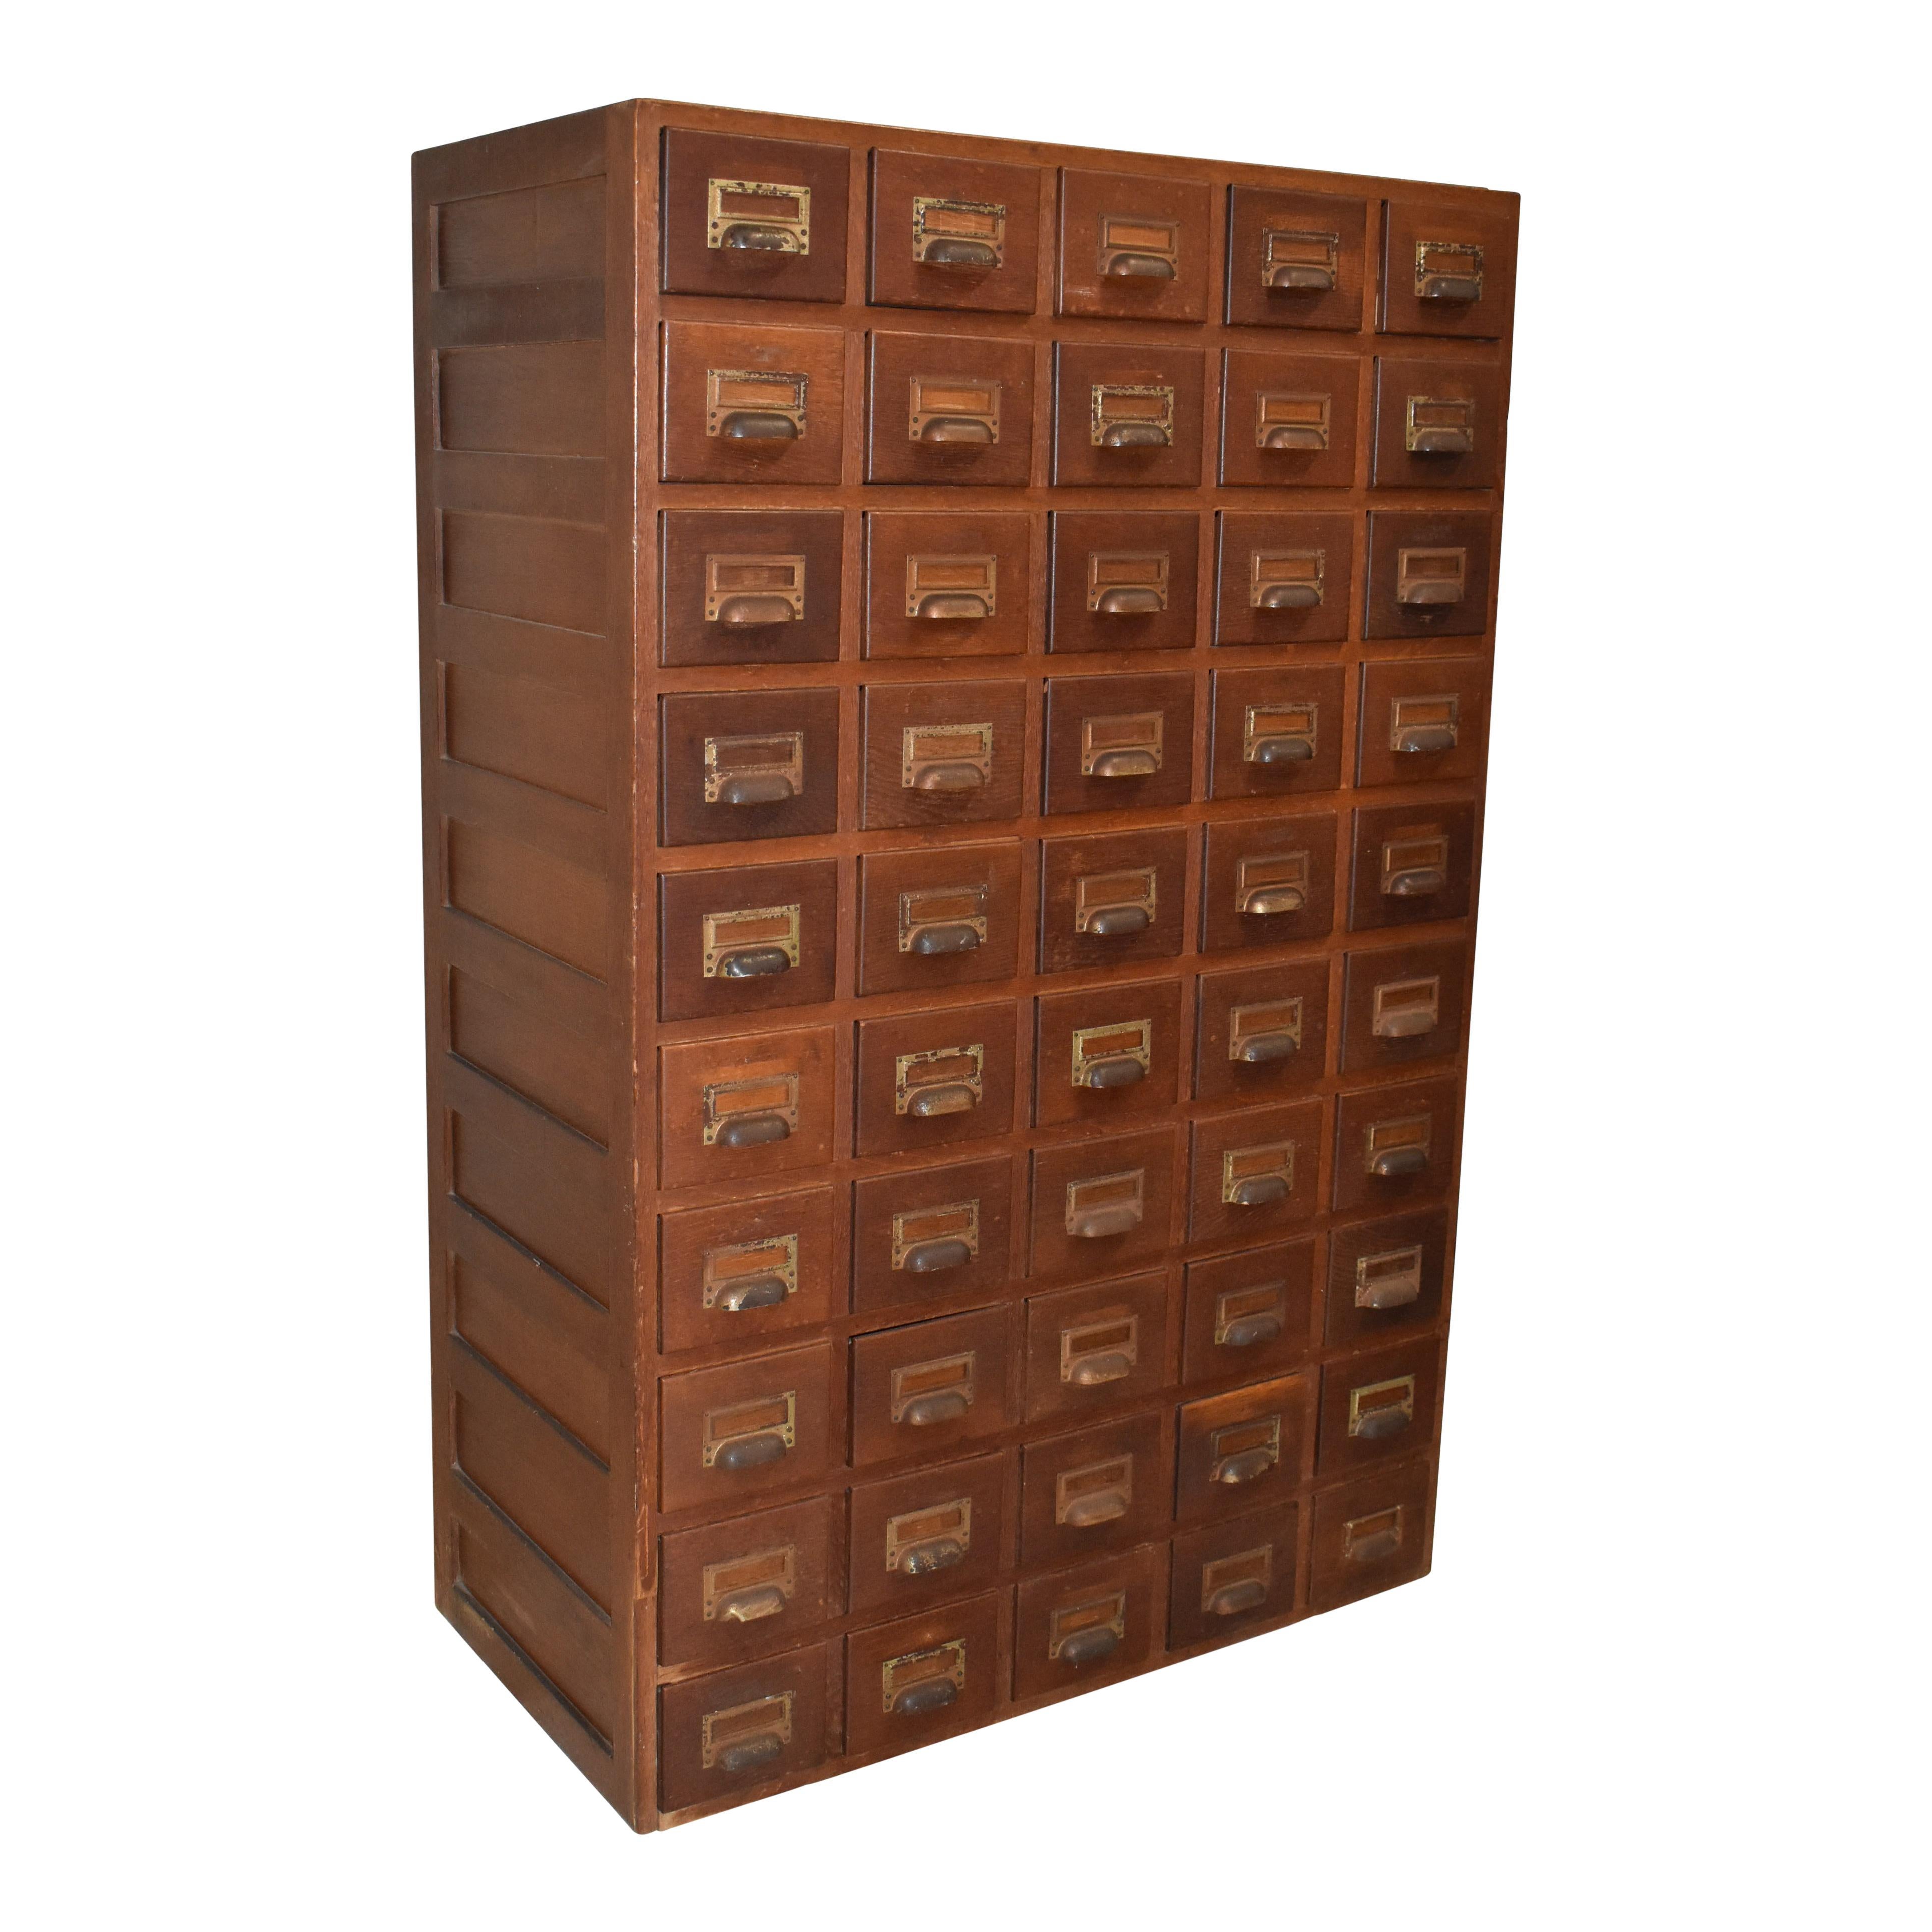 Rappelant l'époque où les bibliothèques ne suivaient pas leurs sélections à l'aide de systèmes informatiques, ce meuble à tiroirs multiples en chêne est composé de 50 tiroirs à catalogues dotés d'une quincaillerie réglable permettant de maintenir